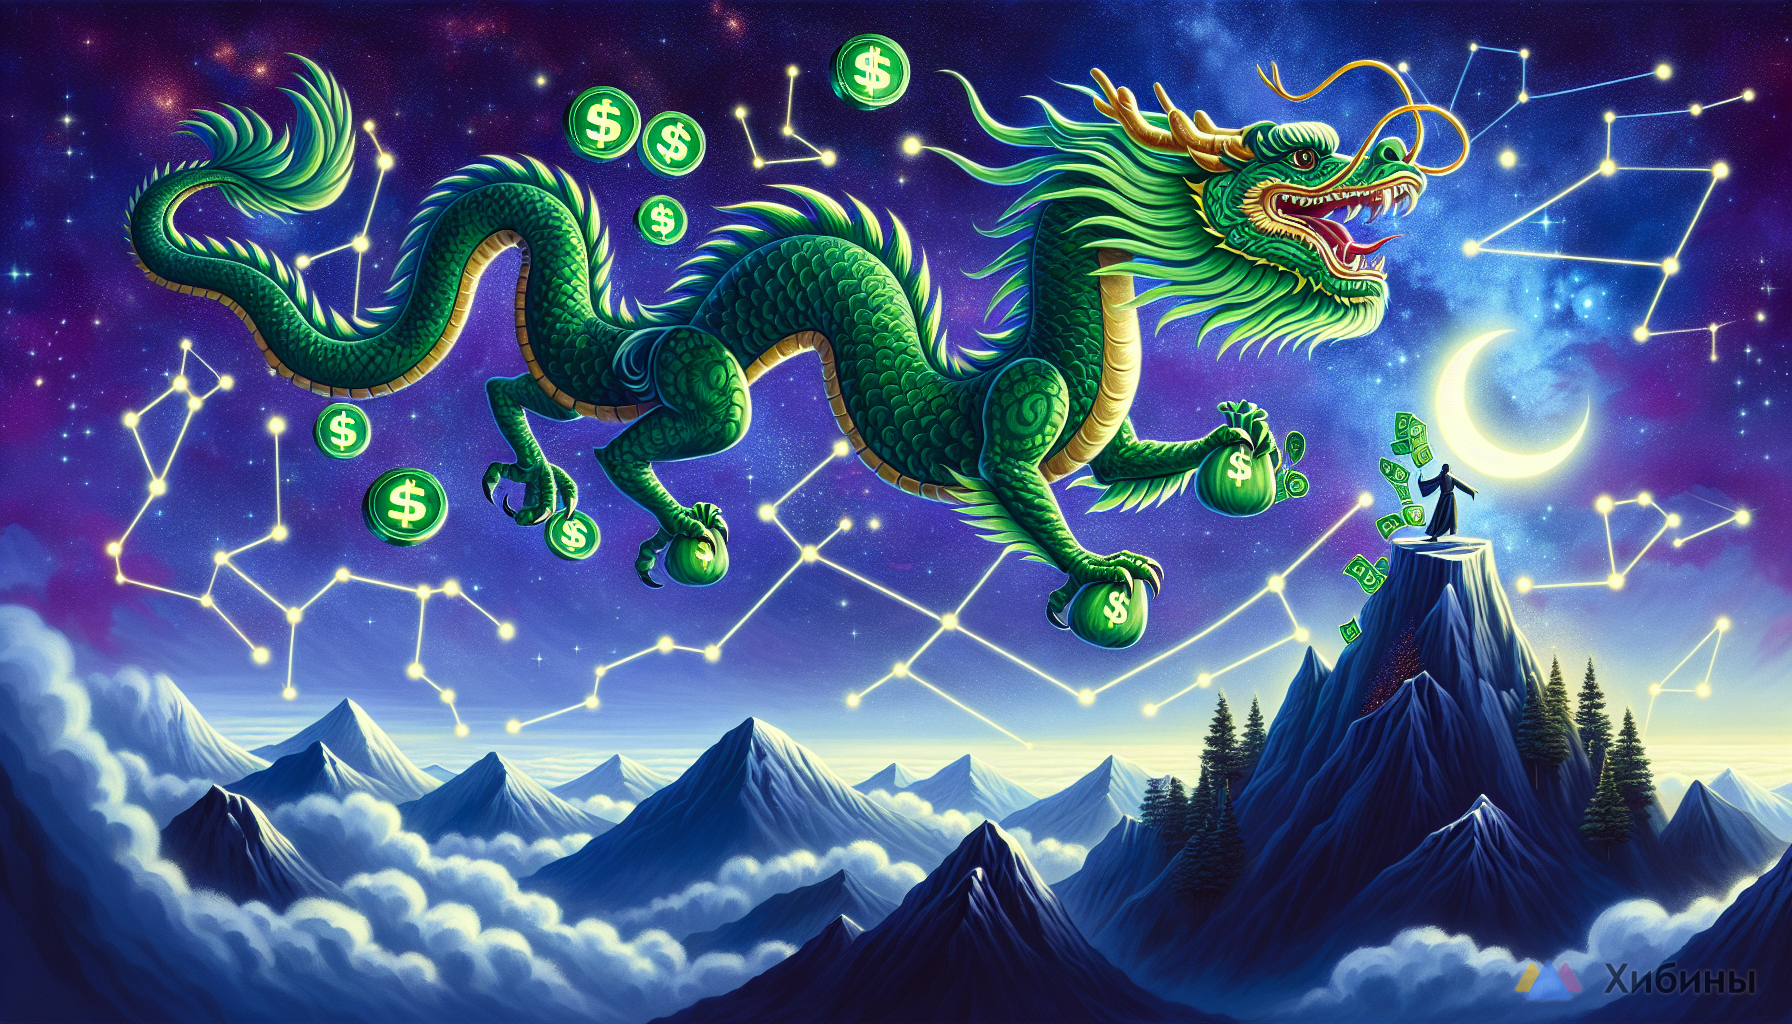 Зеленый деревянный дракон - символ года: что важно знать о главном символе